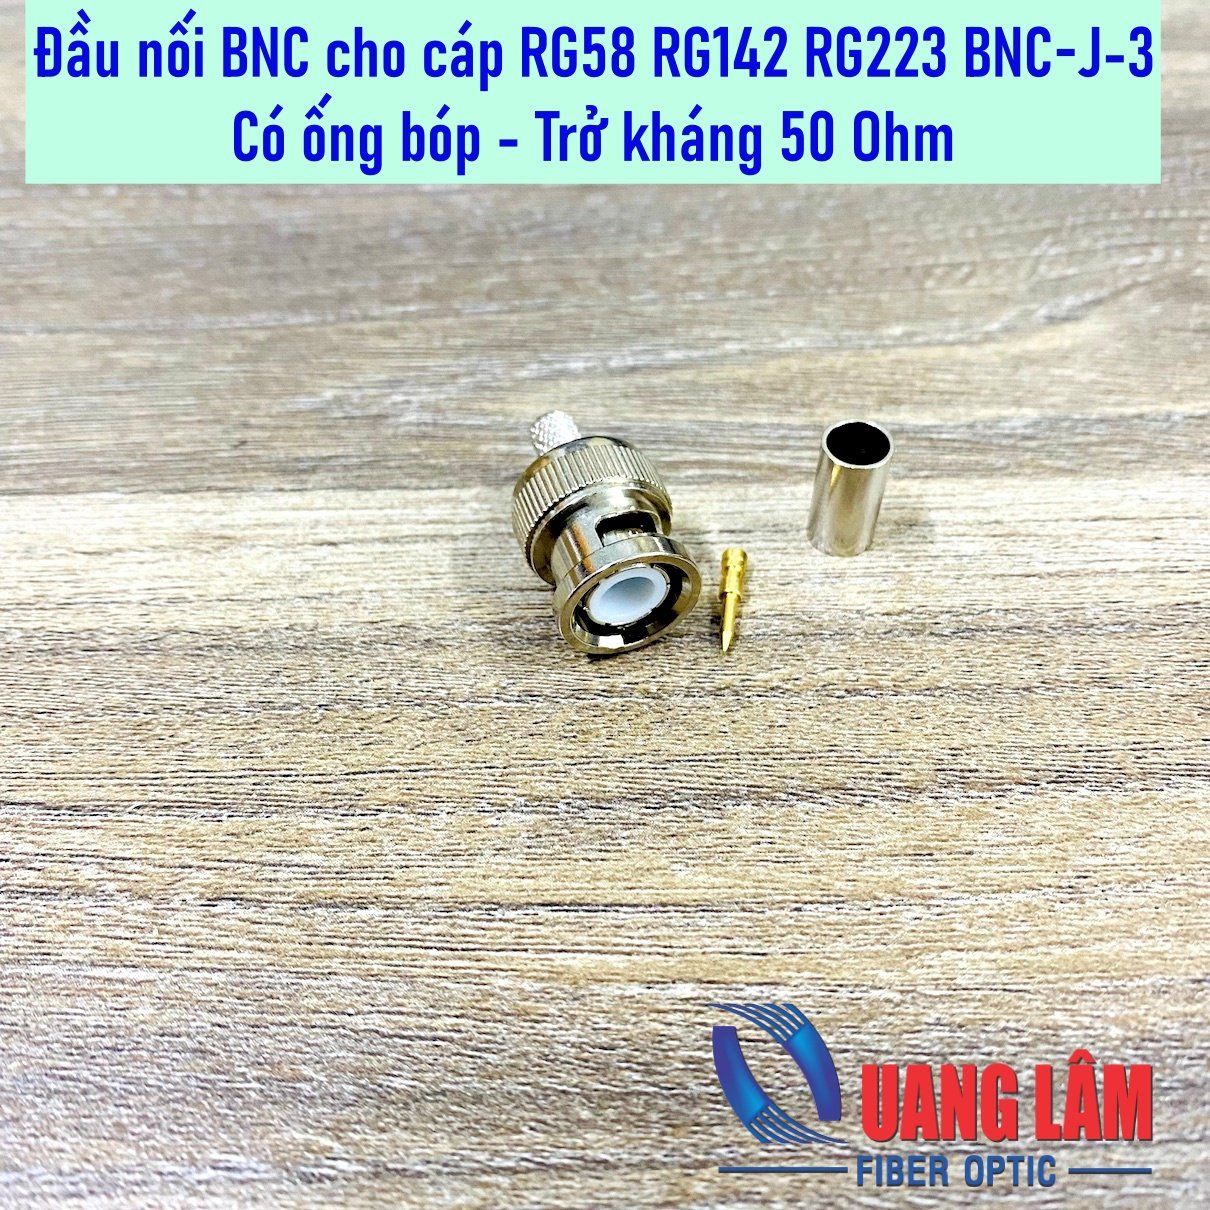 Đầu nối BNC BNC-J-3 cho cáp 50-3 RG58 RG142 RG223 RG400 - Có ống bóp - Trở kháng 50 Ohm